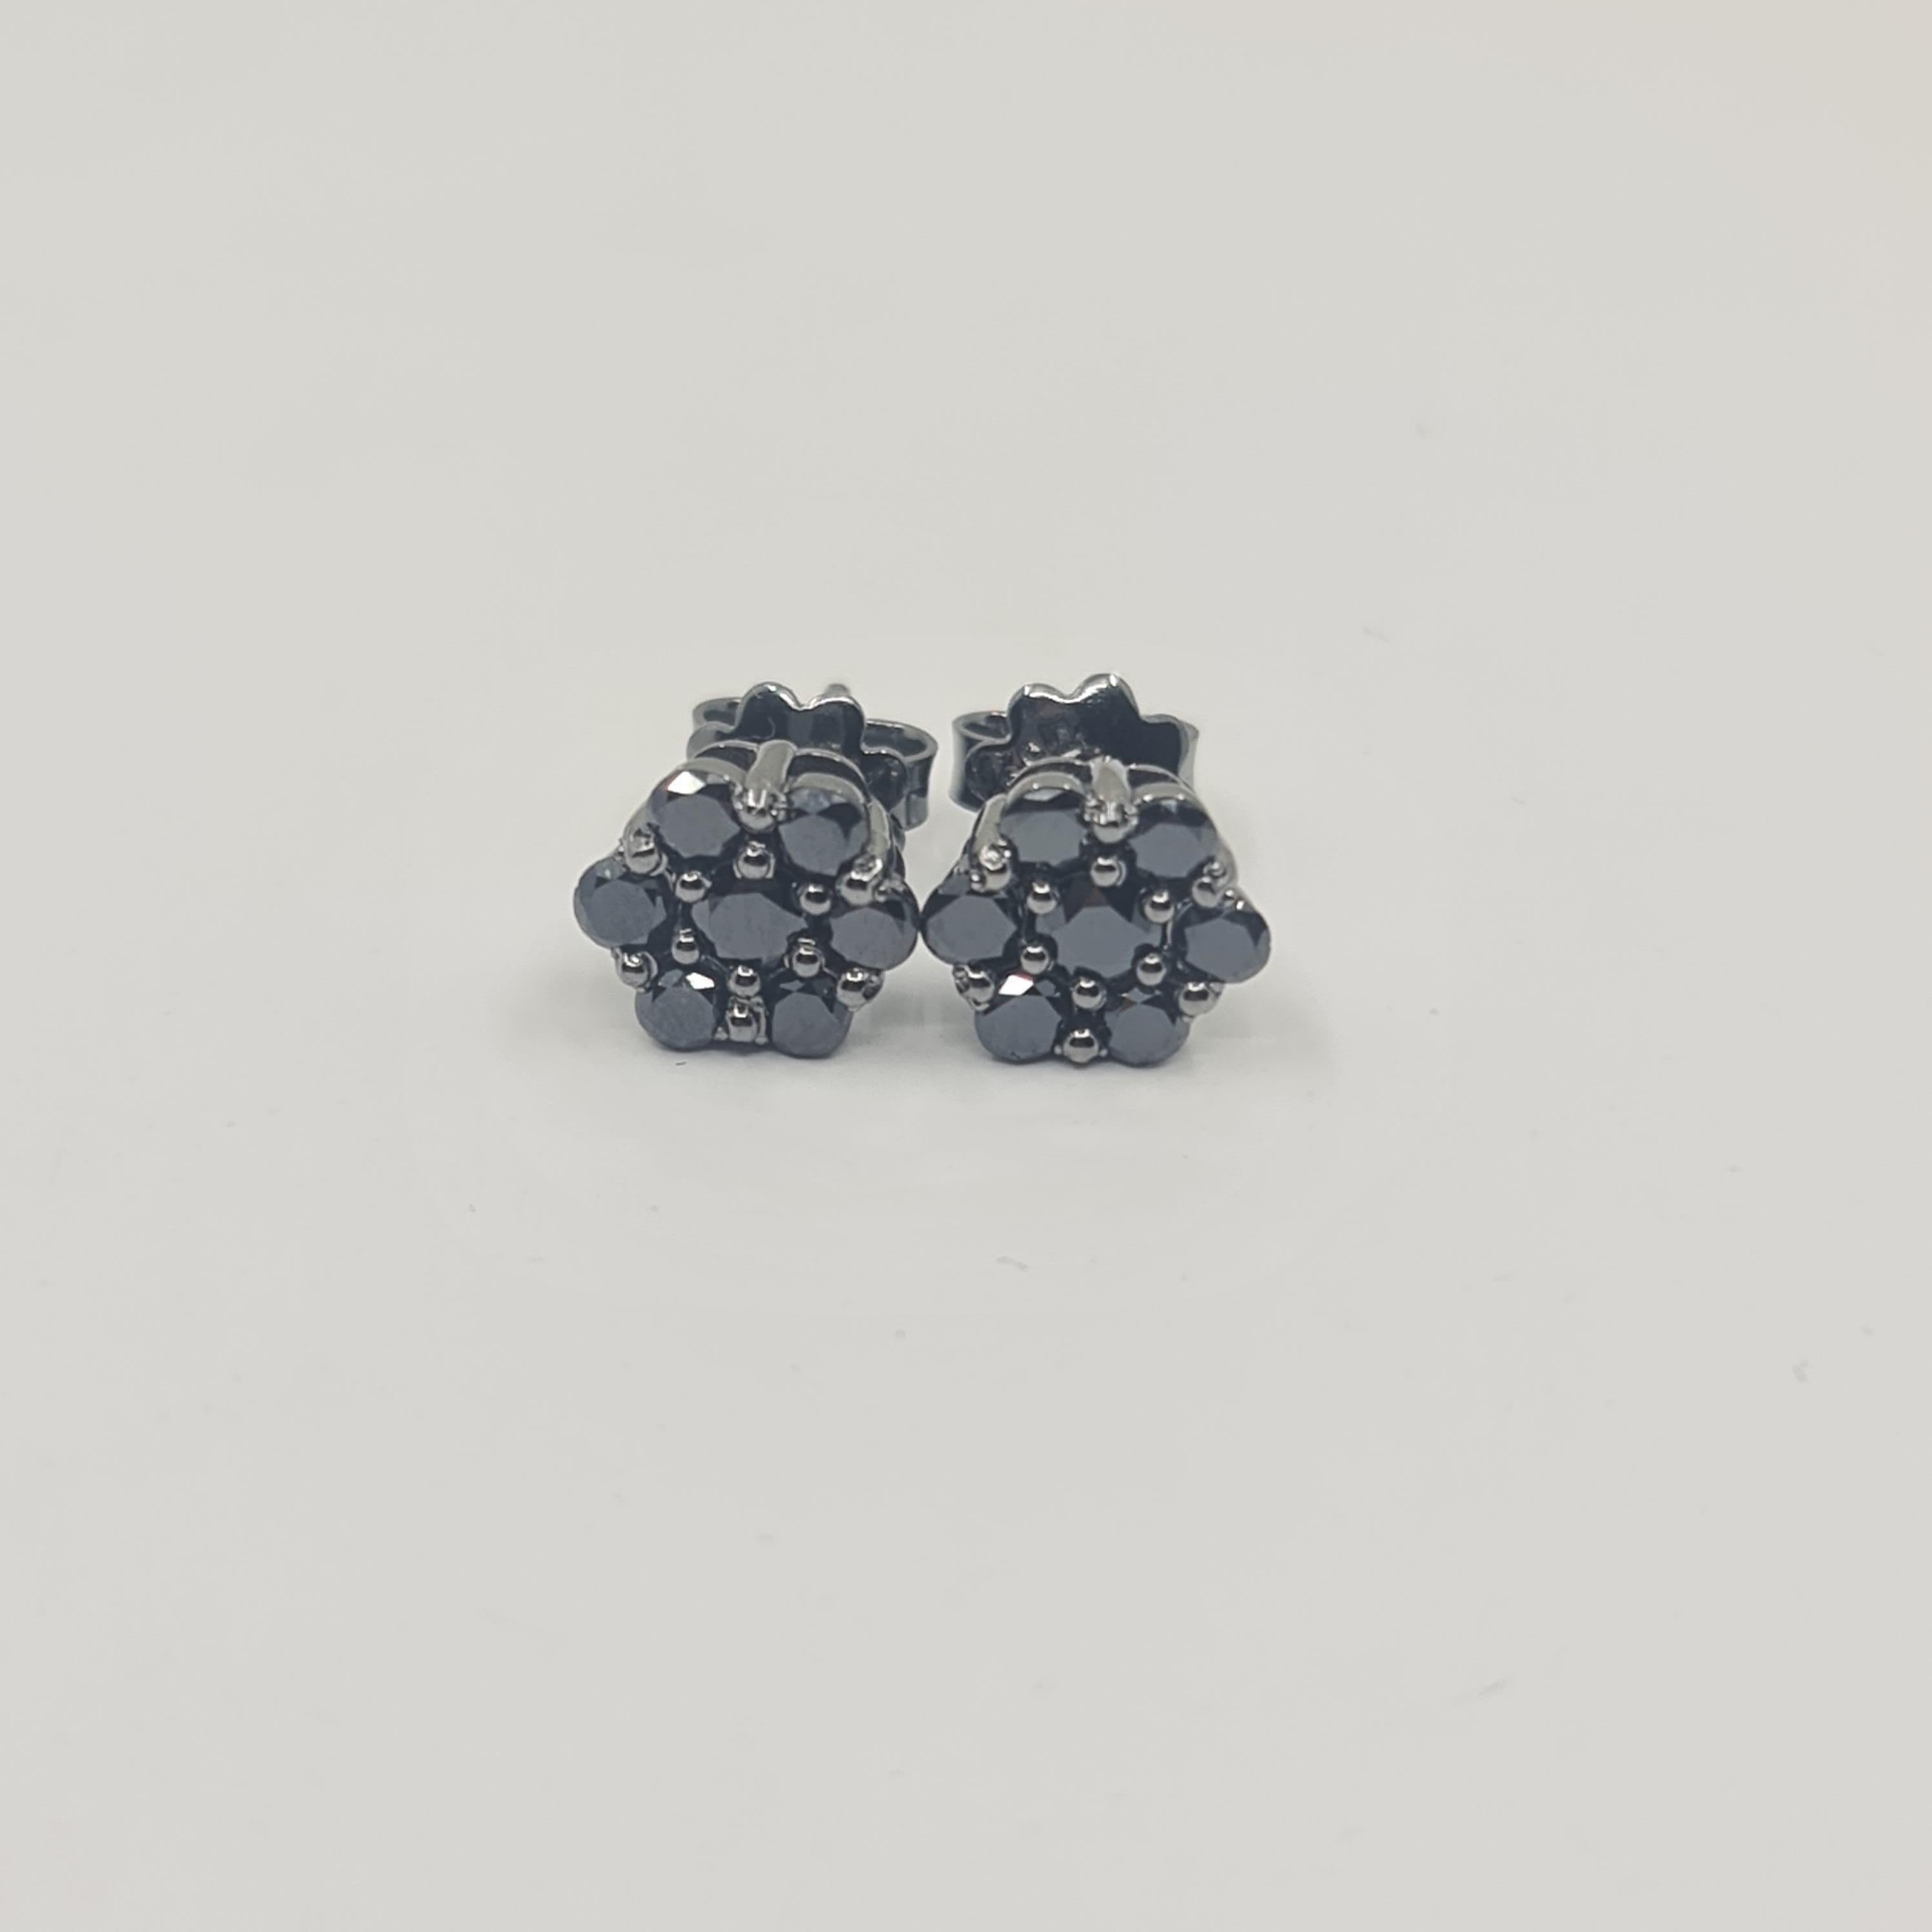 Exquisite schwarze Diamant-Ohrringe 1,11 Karat in 18K Schwarzgold Rundschliff

Schwarz ist schön. Schwarz ist mächtig.
Wir freuen uns sehr, unsere brandneue BLACK STARS Kollektion weltweit vorstellen zu können! 
Alle schwarzen Diamanten sind in